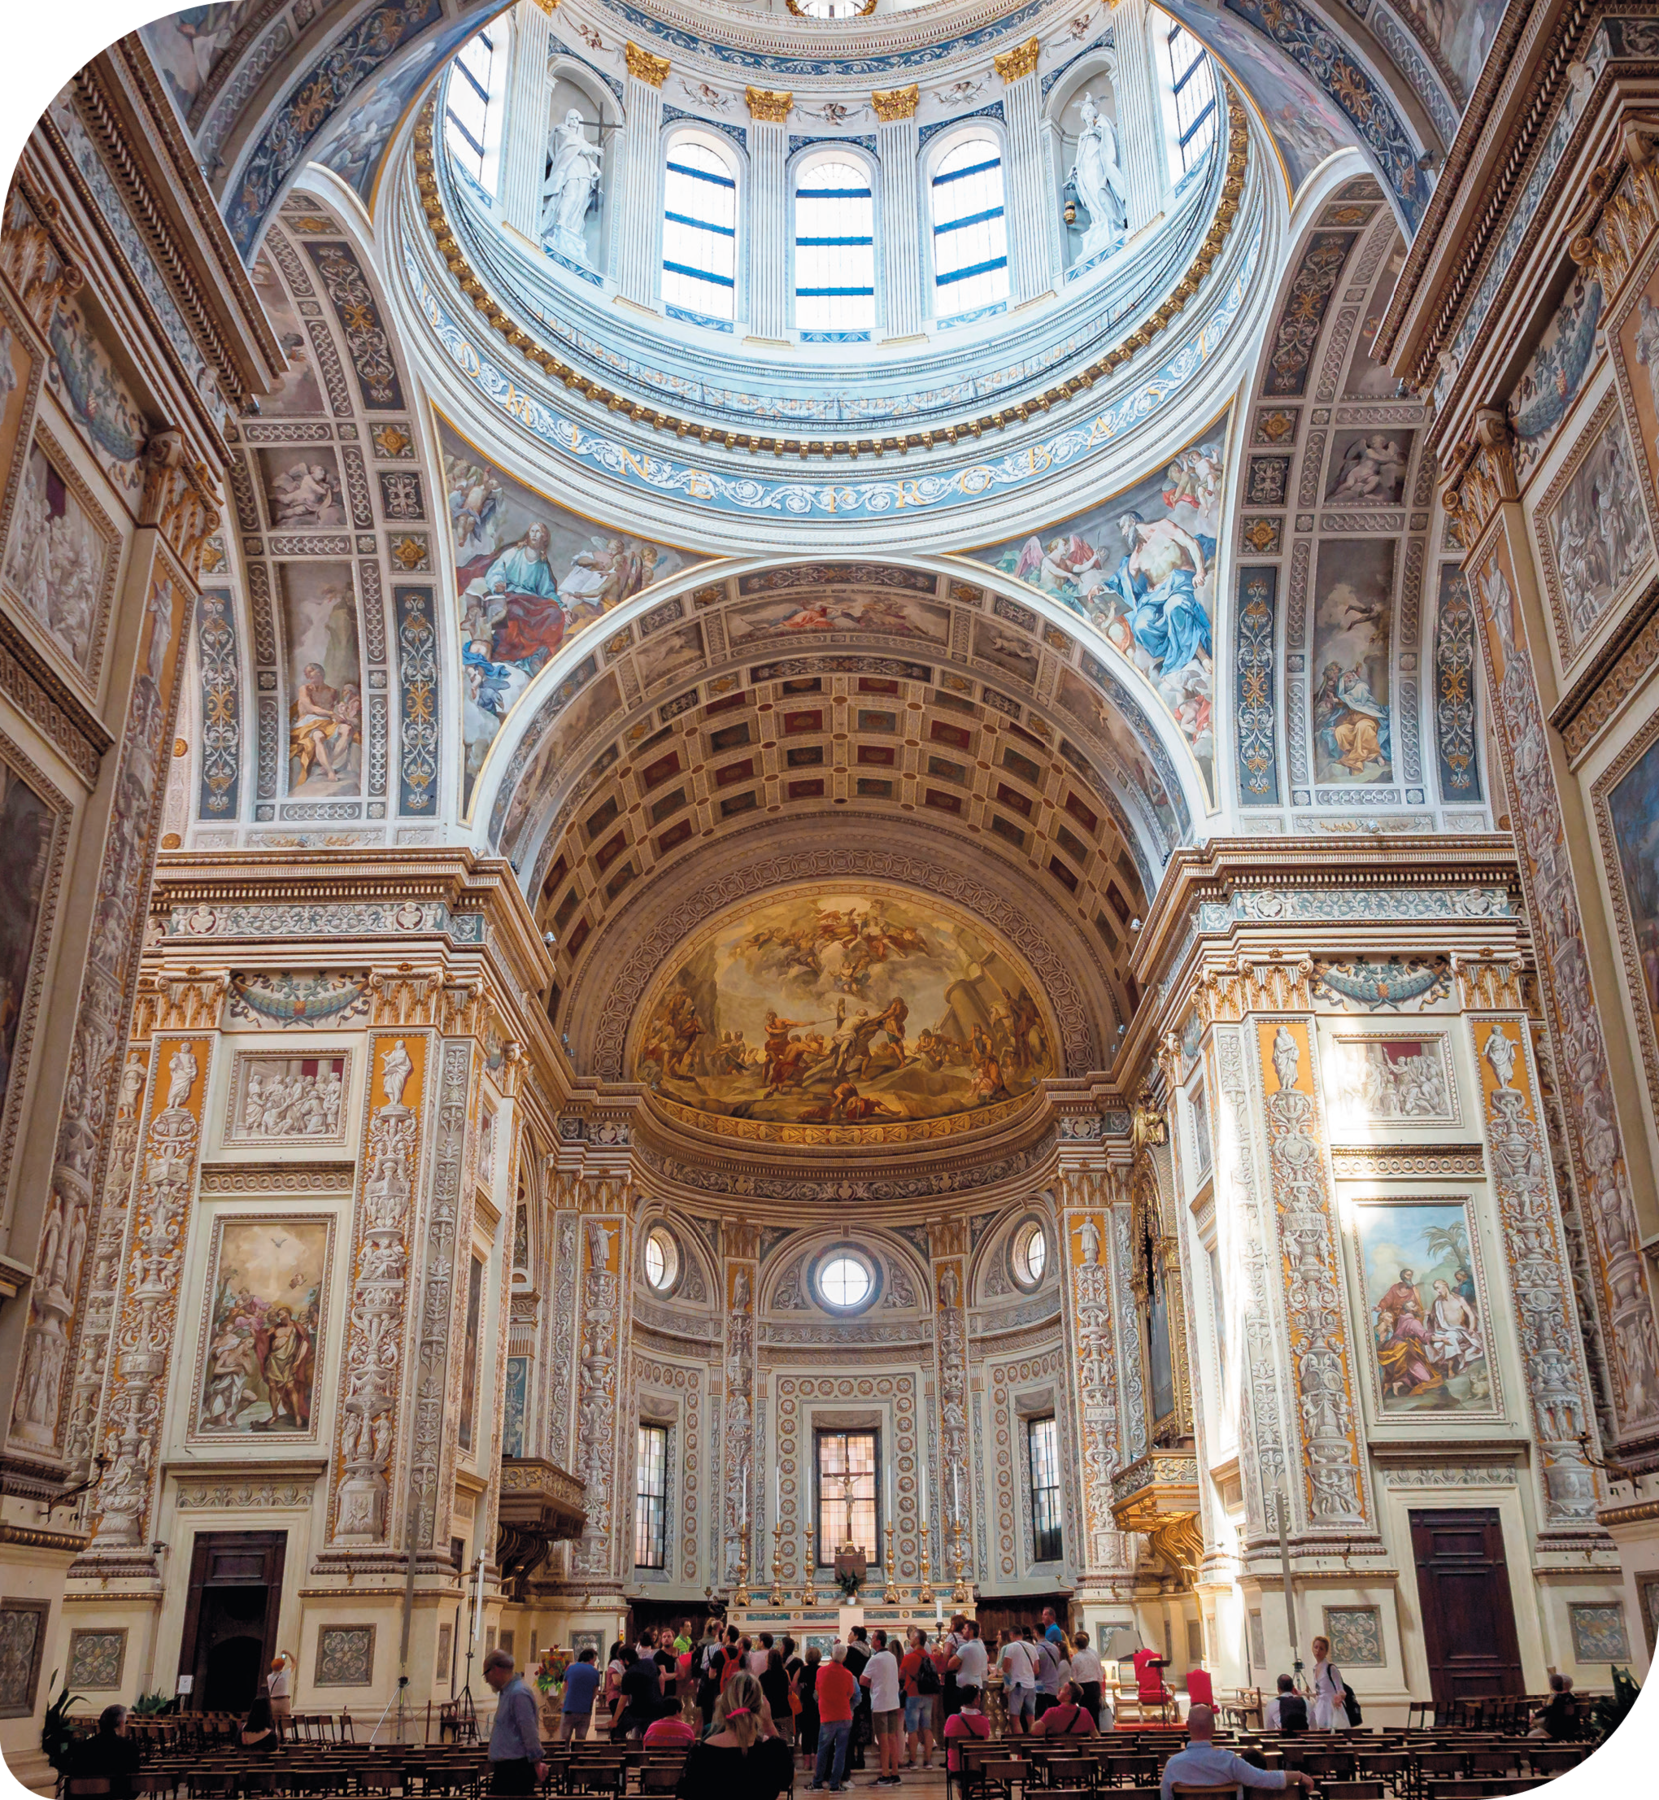 Fotografia. Vista interna de Basílica. Paredes em forma de grandes arcos e decoradas com várias pinturas. Na parte superior, ao centro, uma grande cúpula. Há várias pessoas observando as pinturas nas paredes.